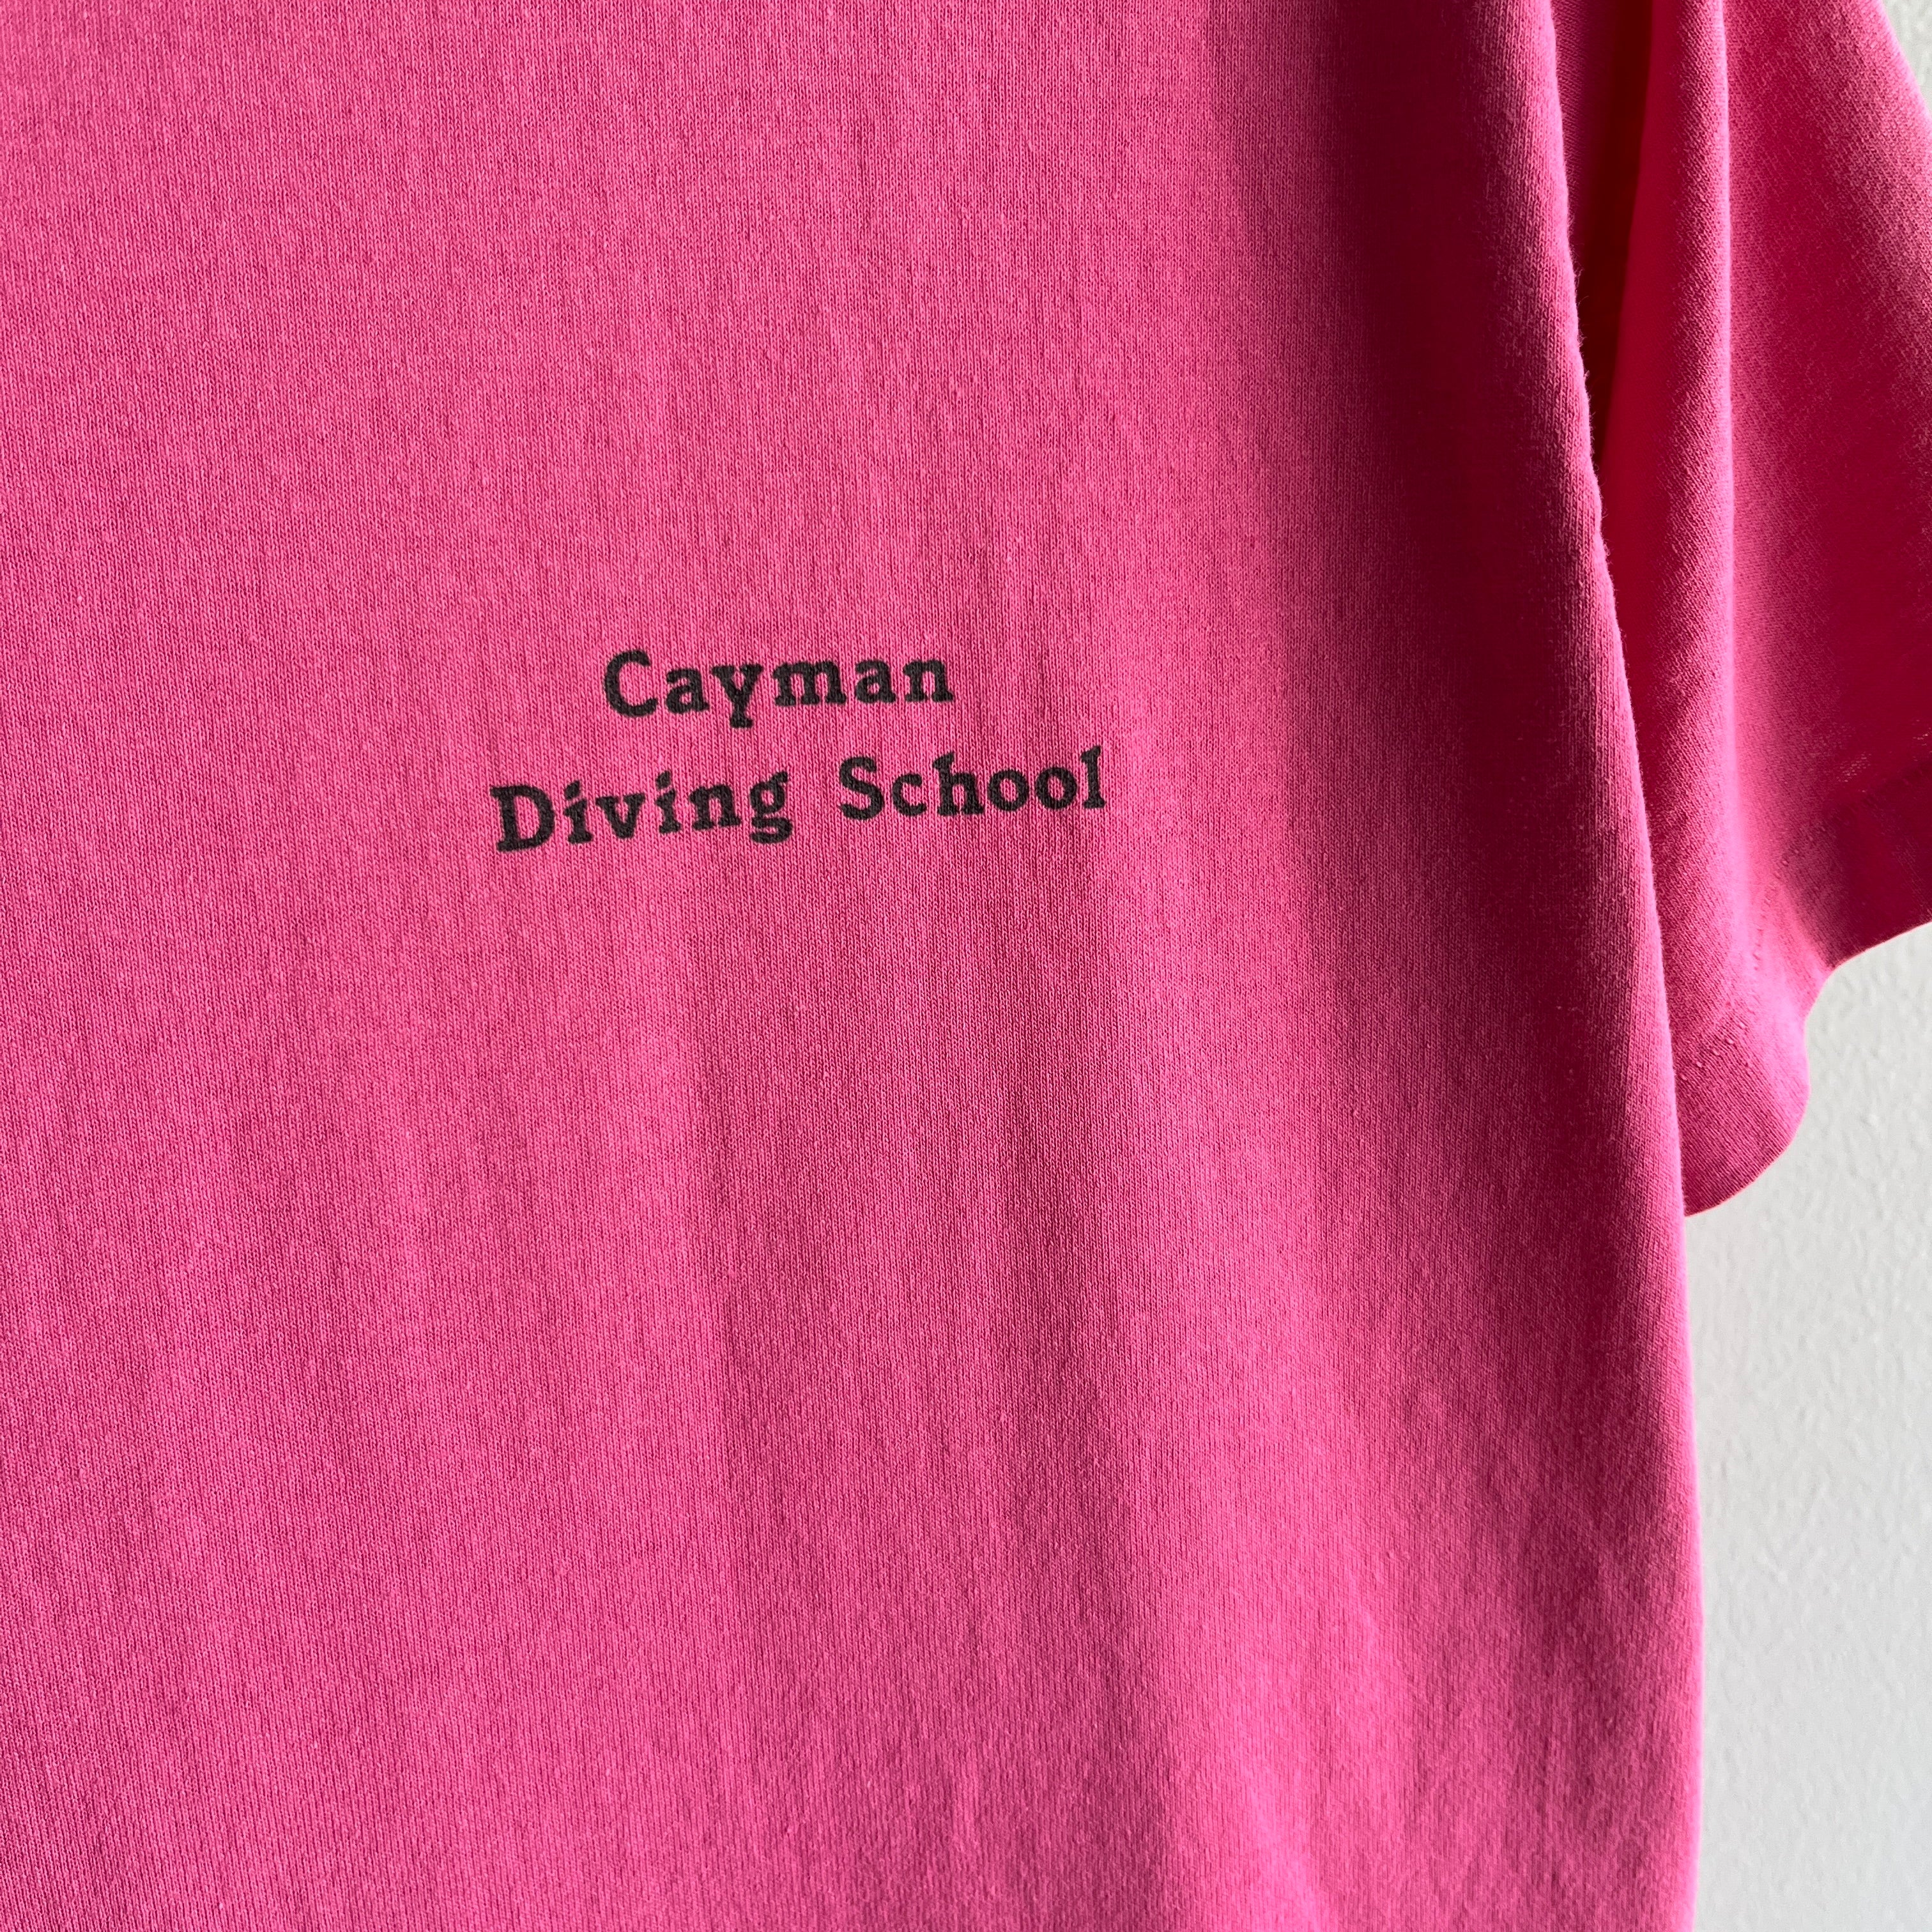 1980s Cayman Islands Diving School T-Shirt